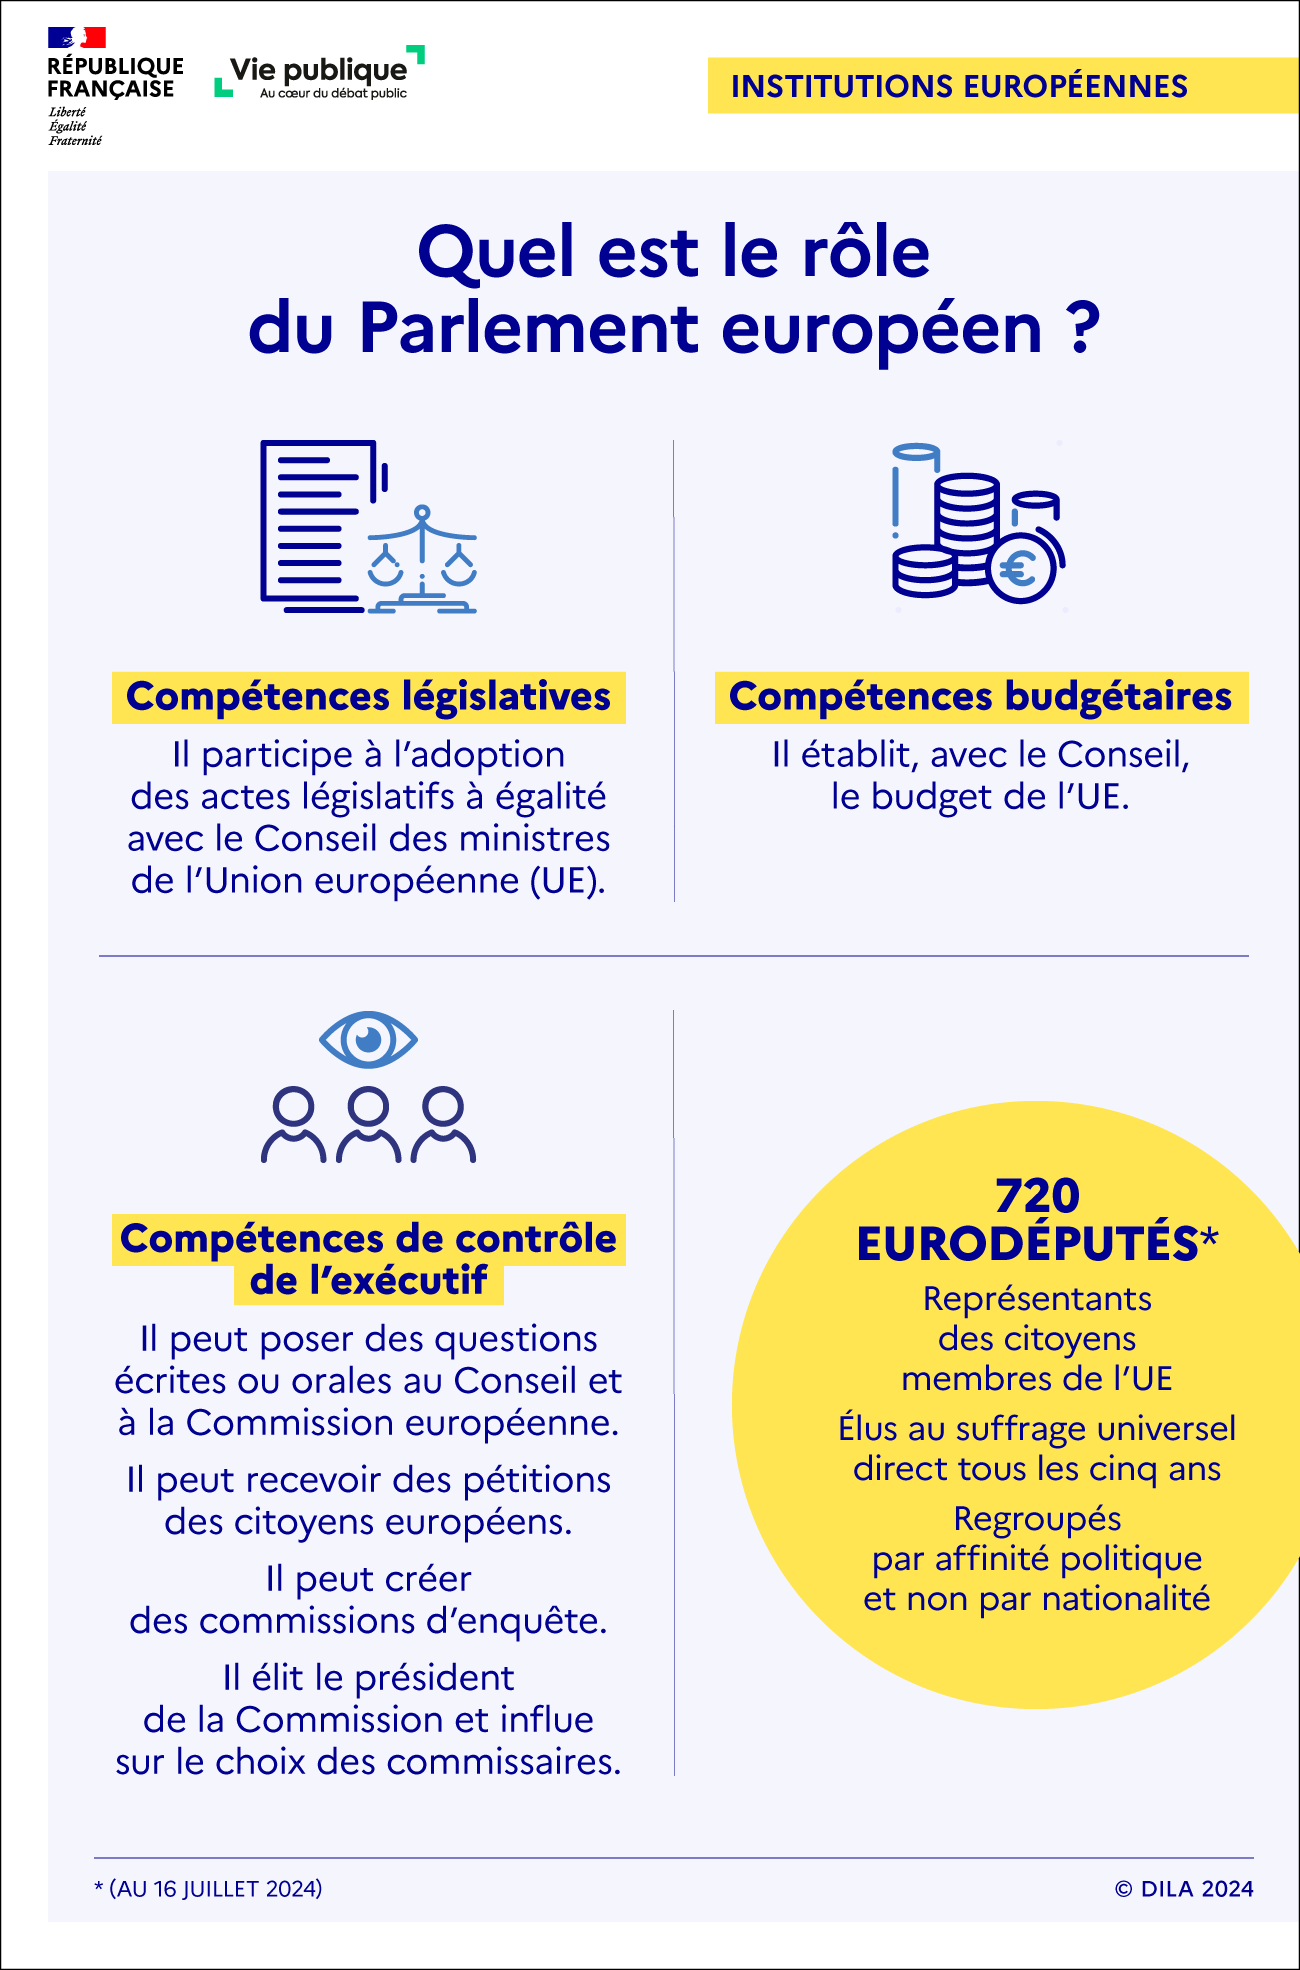 Quel est le rôle du Parlement européen ? - plus de détails dans le texte suivant l’infographie